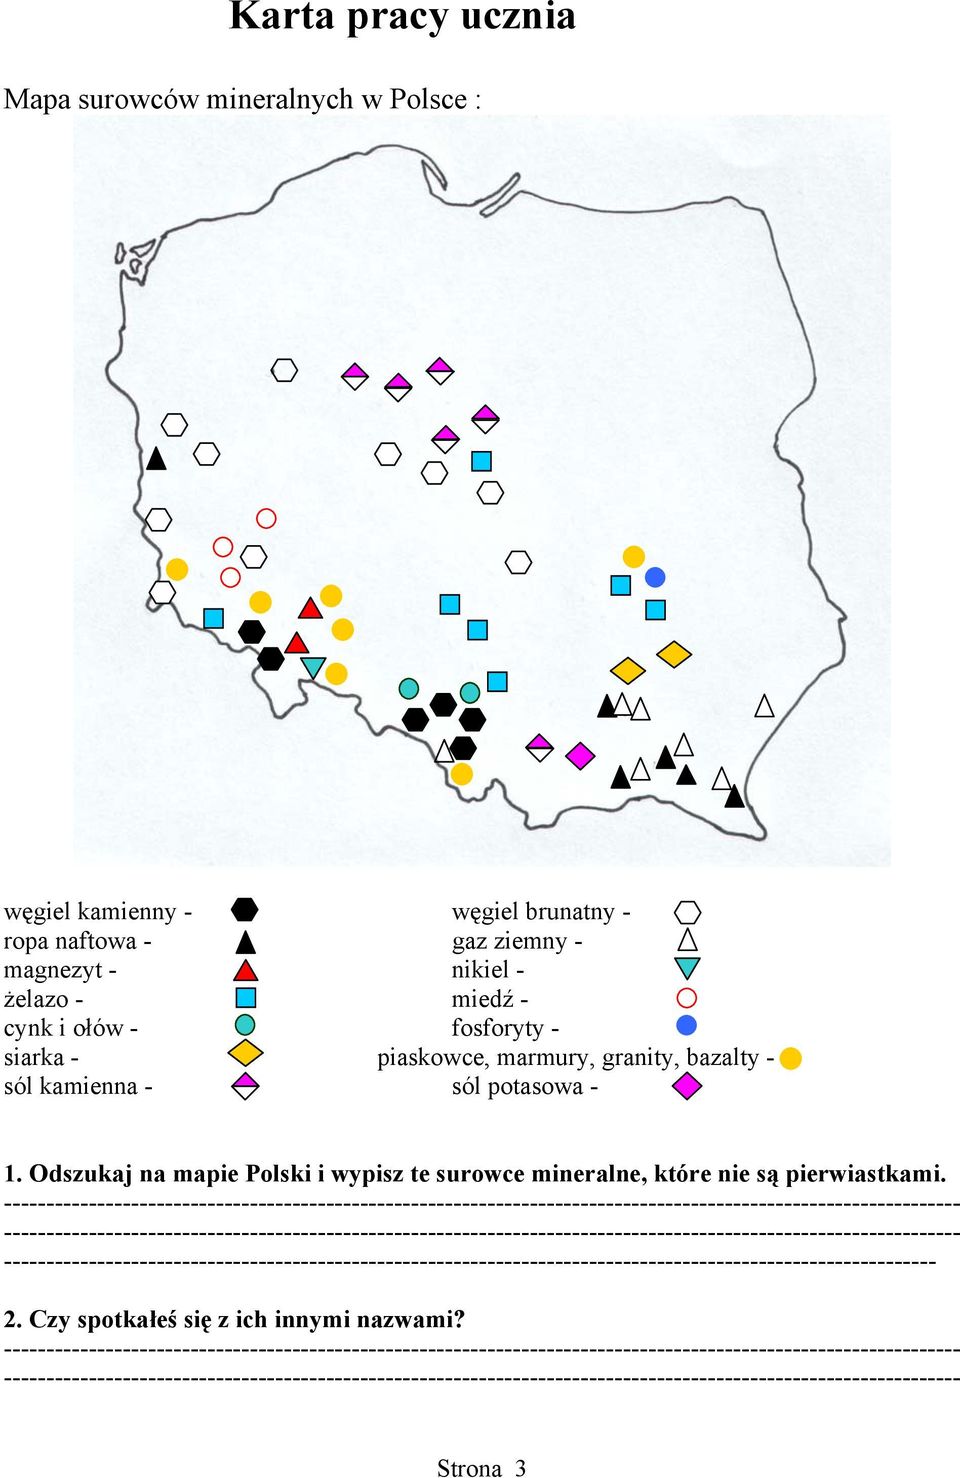 sól potasowa - 1. Odszukaj na mapie Polski i wypisz te surowce mineralne, które nie są pierwiastkami.